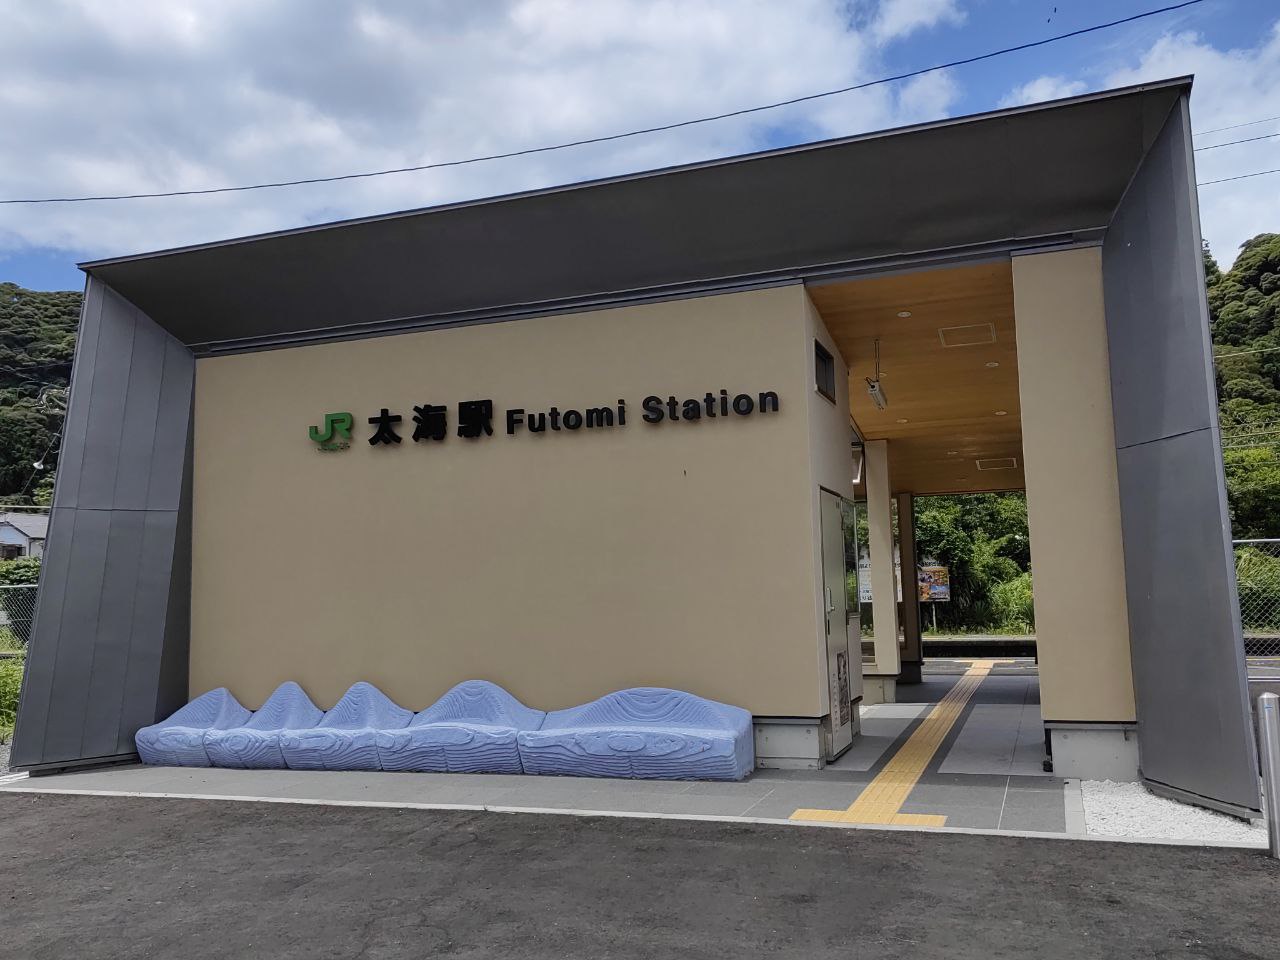 到达，太海站！太海站虽小但精致，日本的村镇站台不少都很有设计感